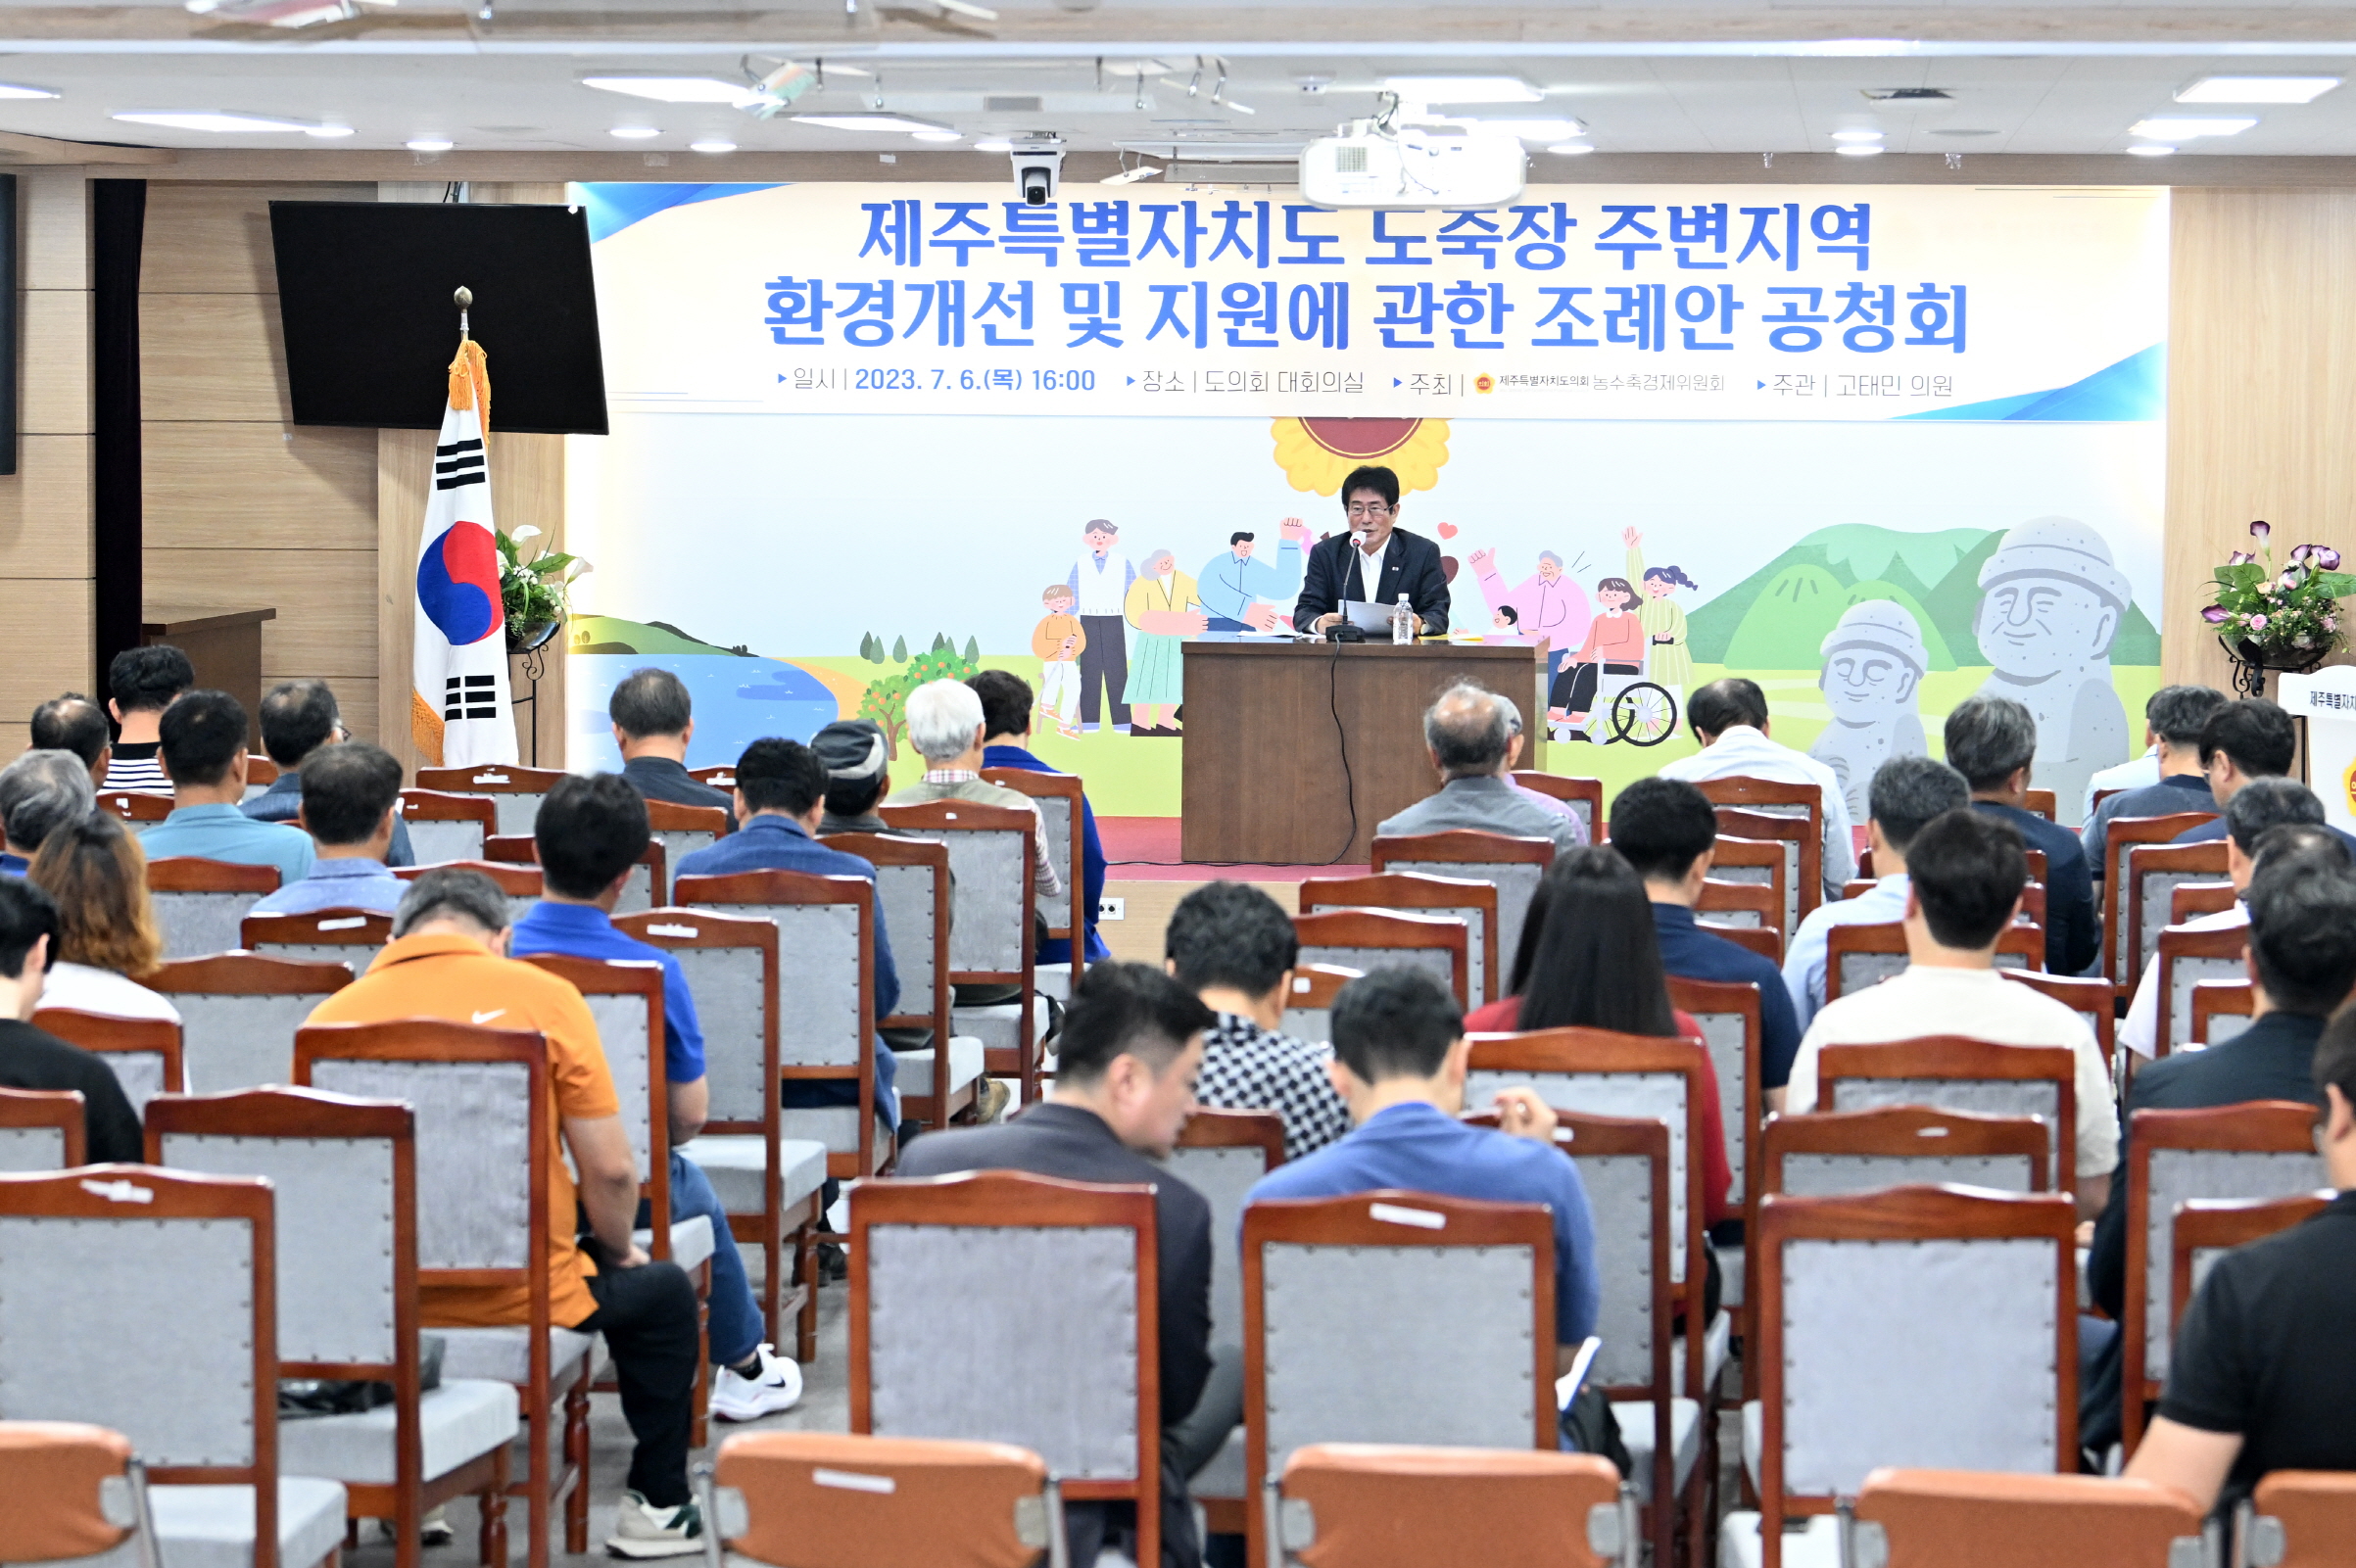 고태민 의원, “도축장 주변지역 환경개선 및 지원에 관한 조례안”공청회 개최 